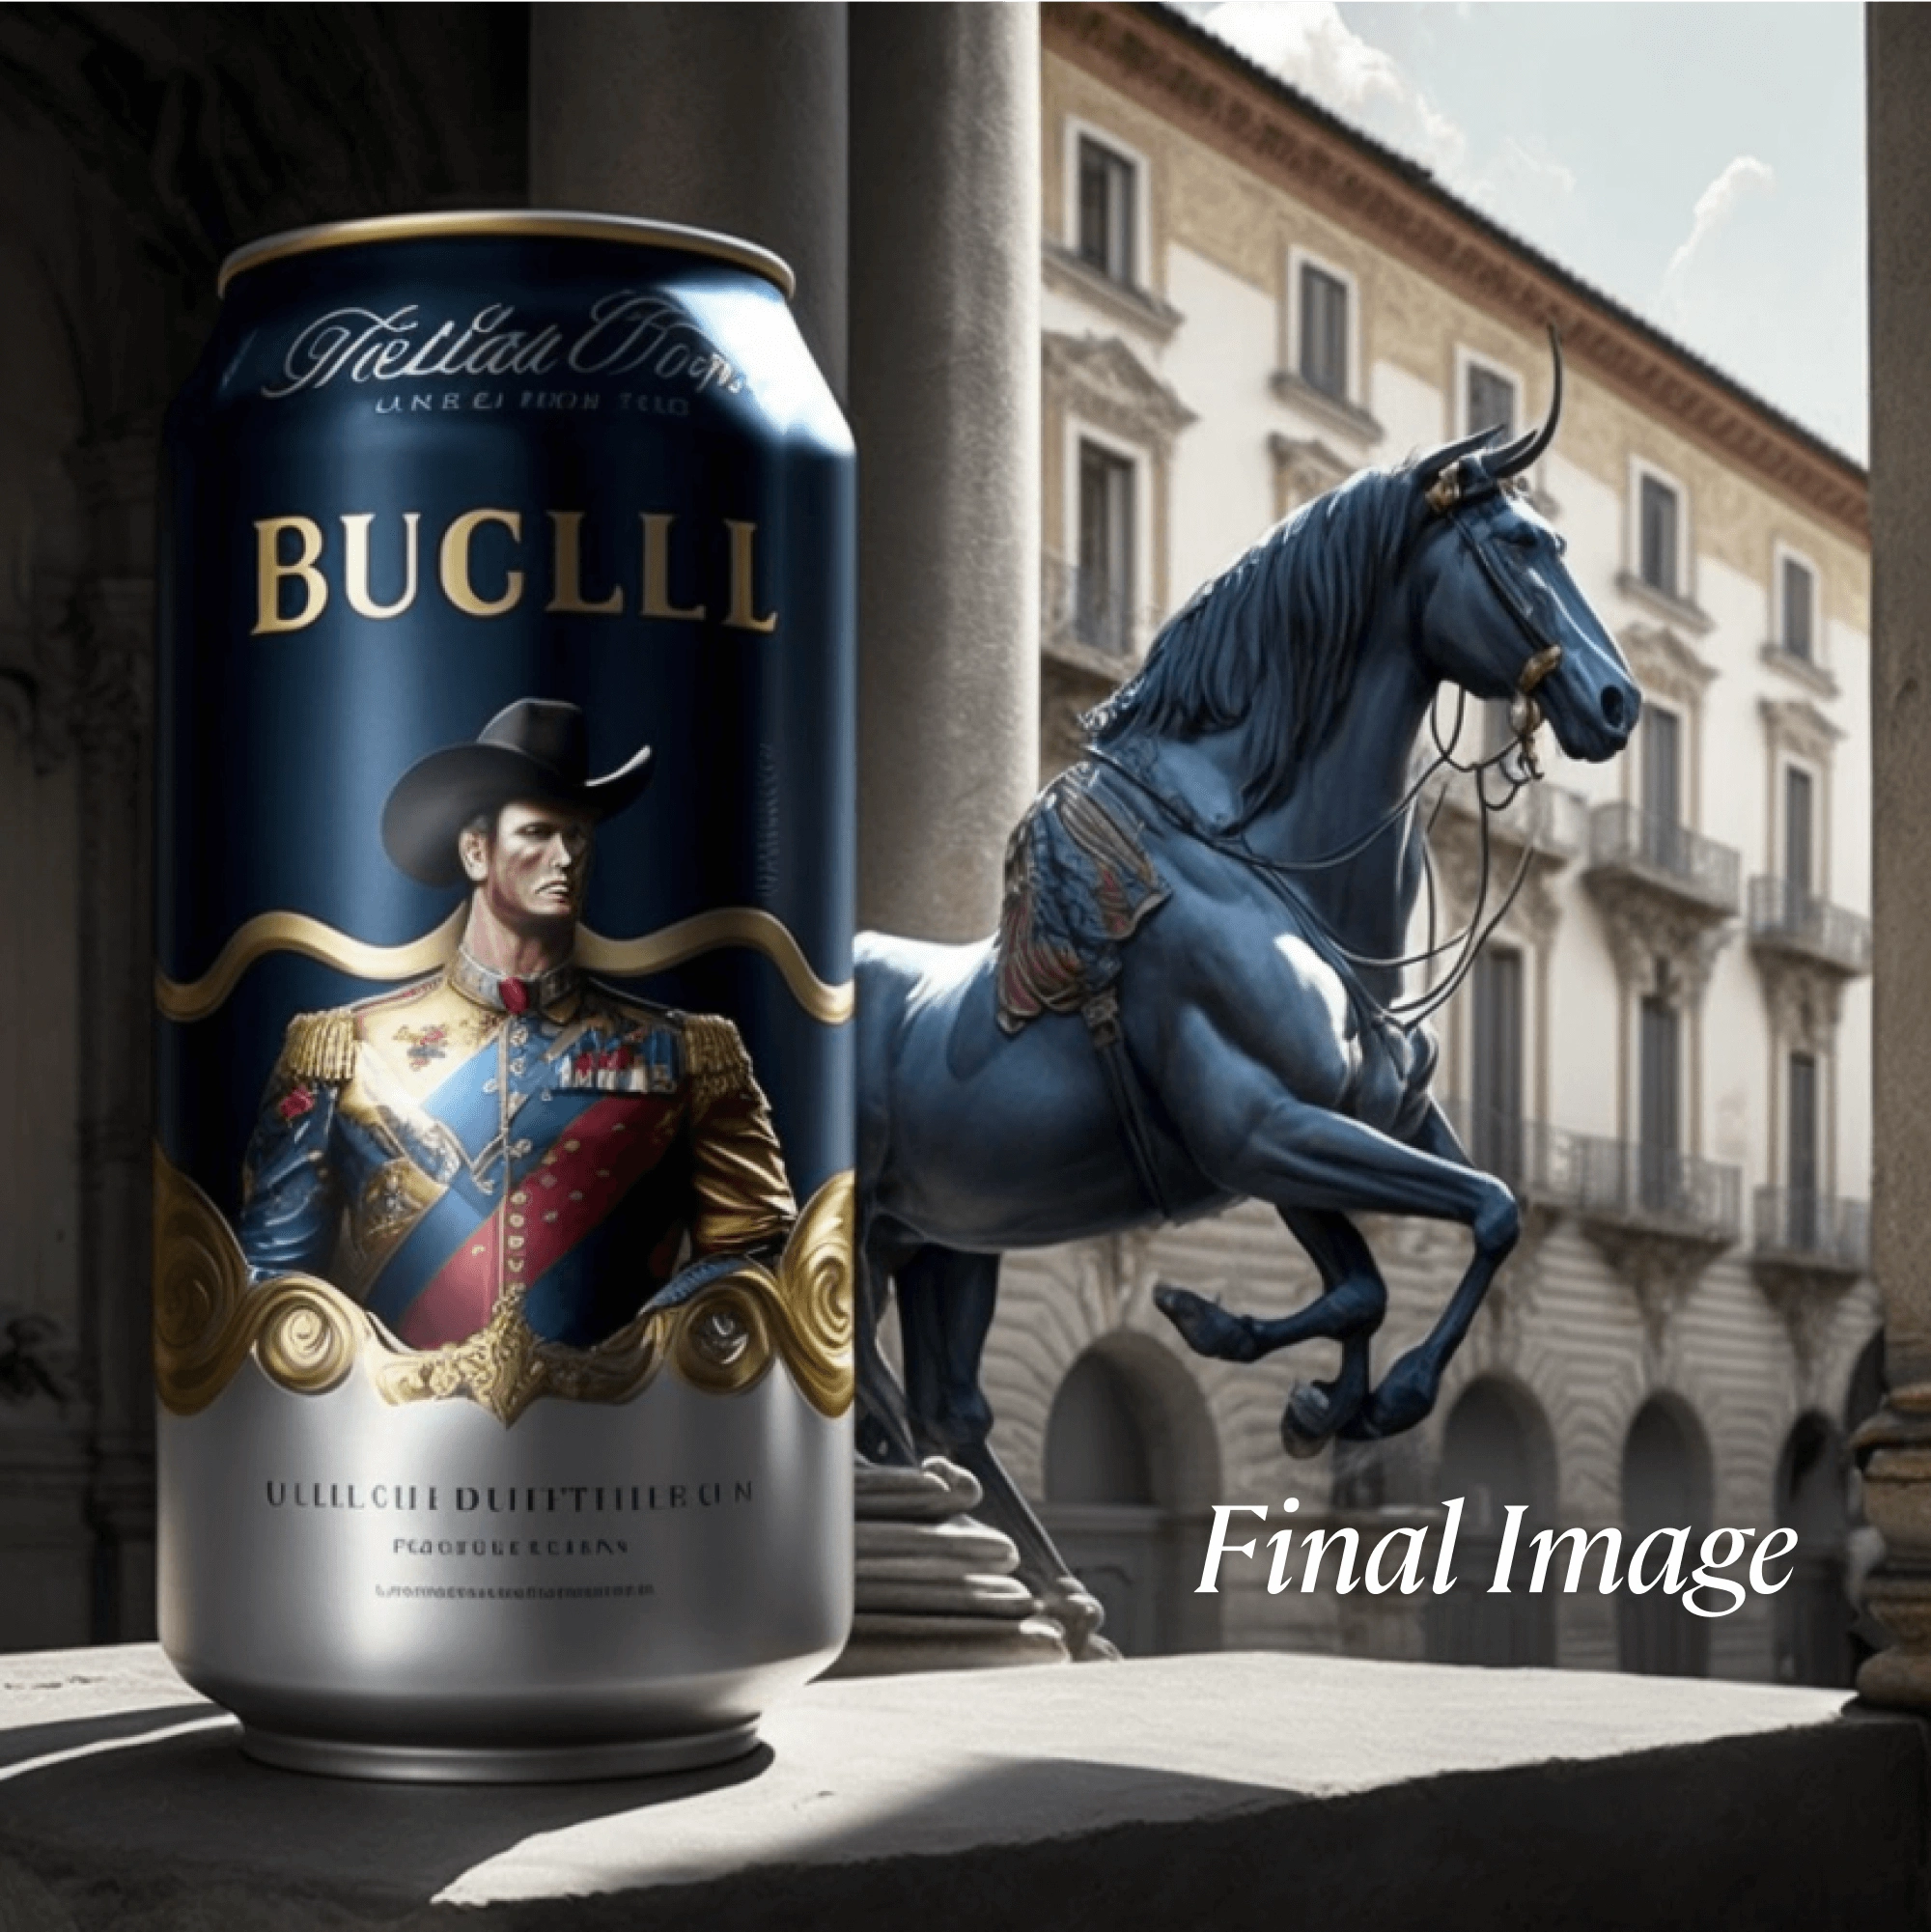 Gucci x Red Bull final